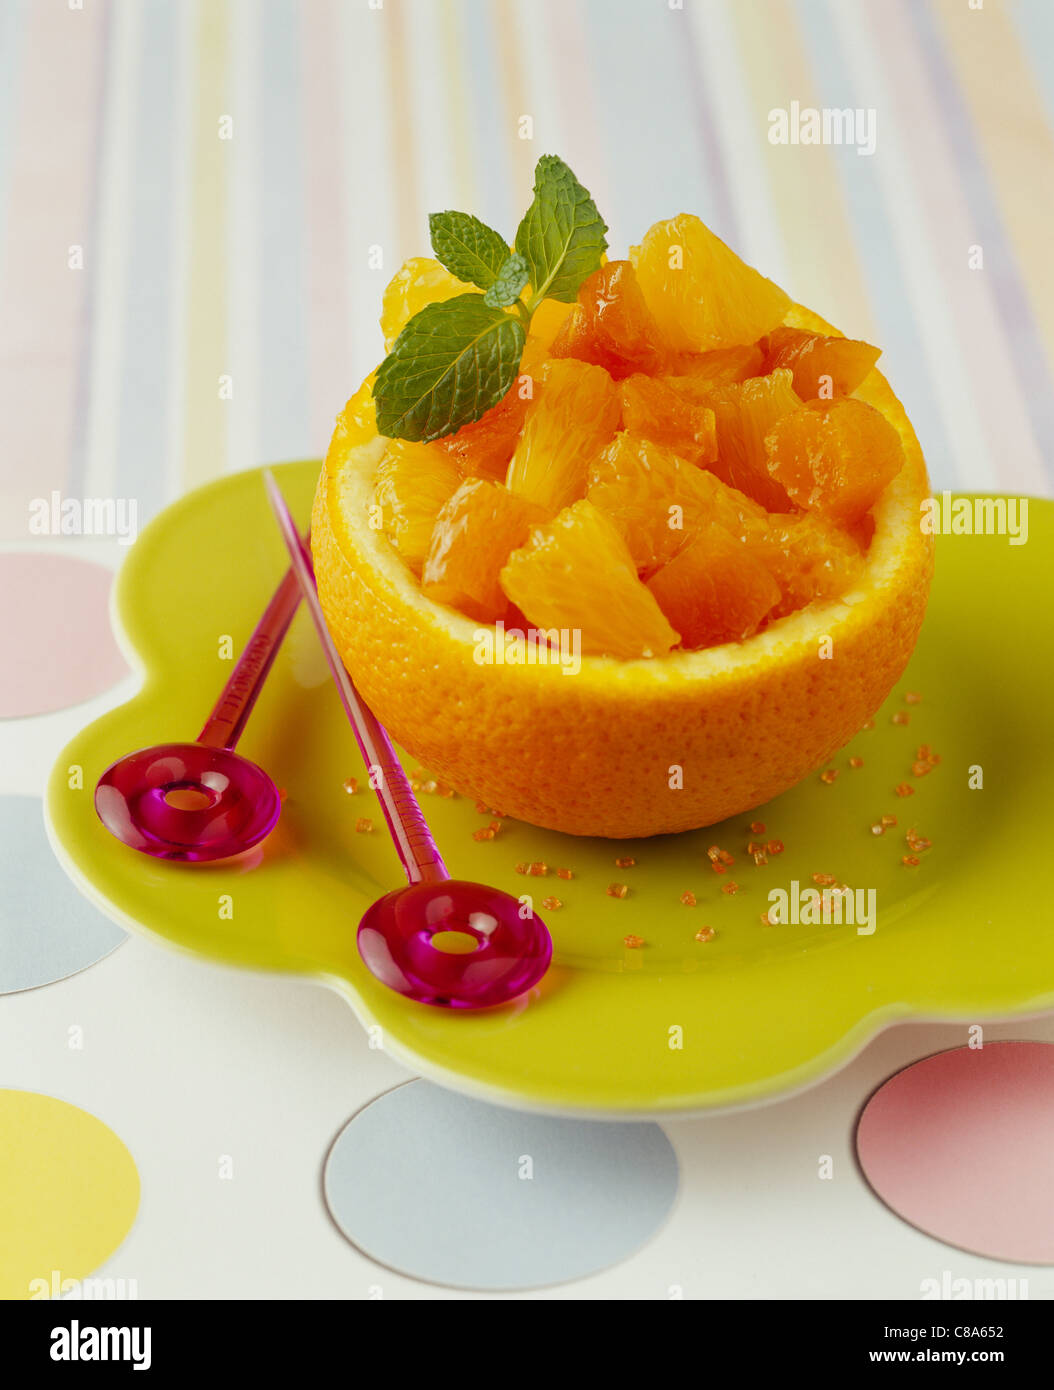 Salade de fruits d'abricot et d'orange servi dans une orange Banque D'Images